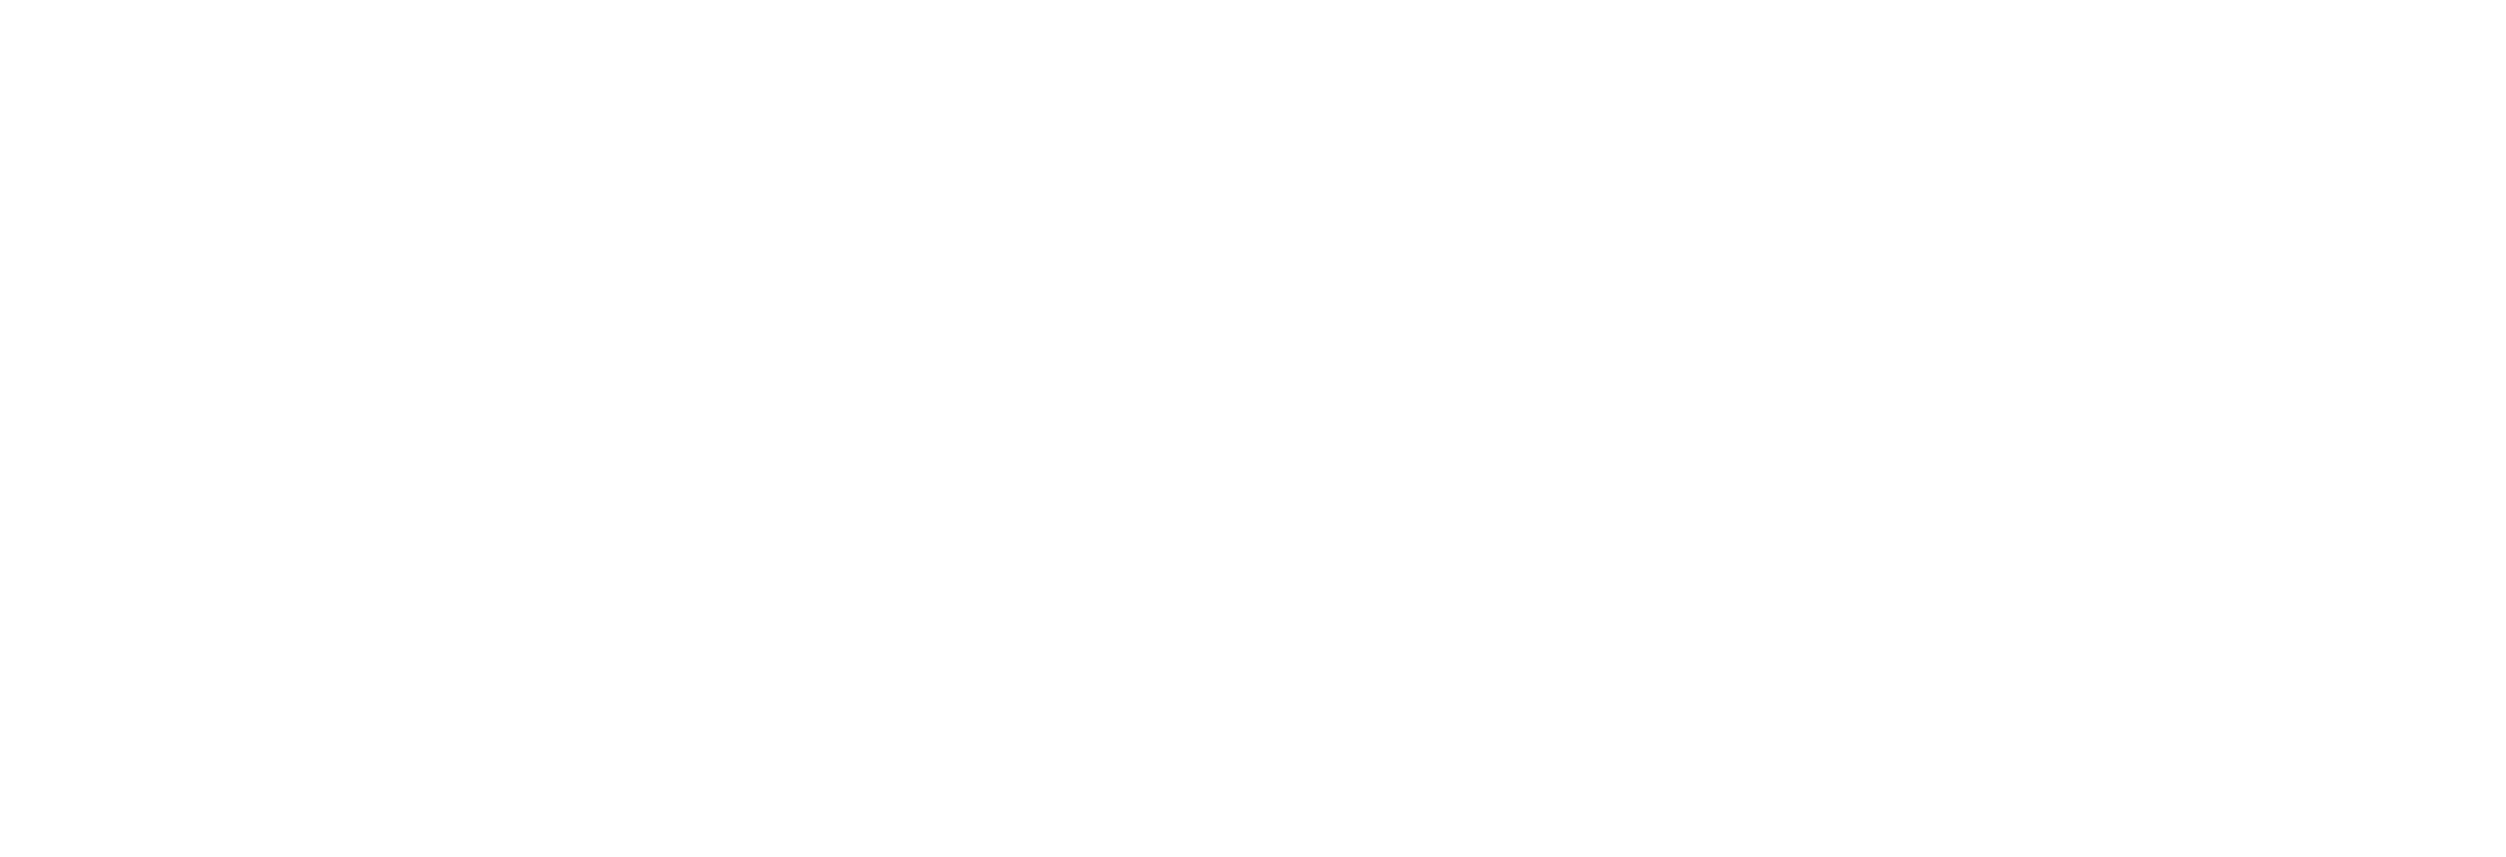 Logo-Critizr-White